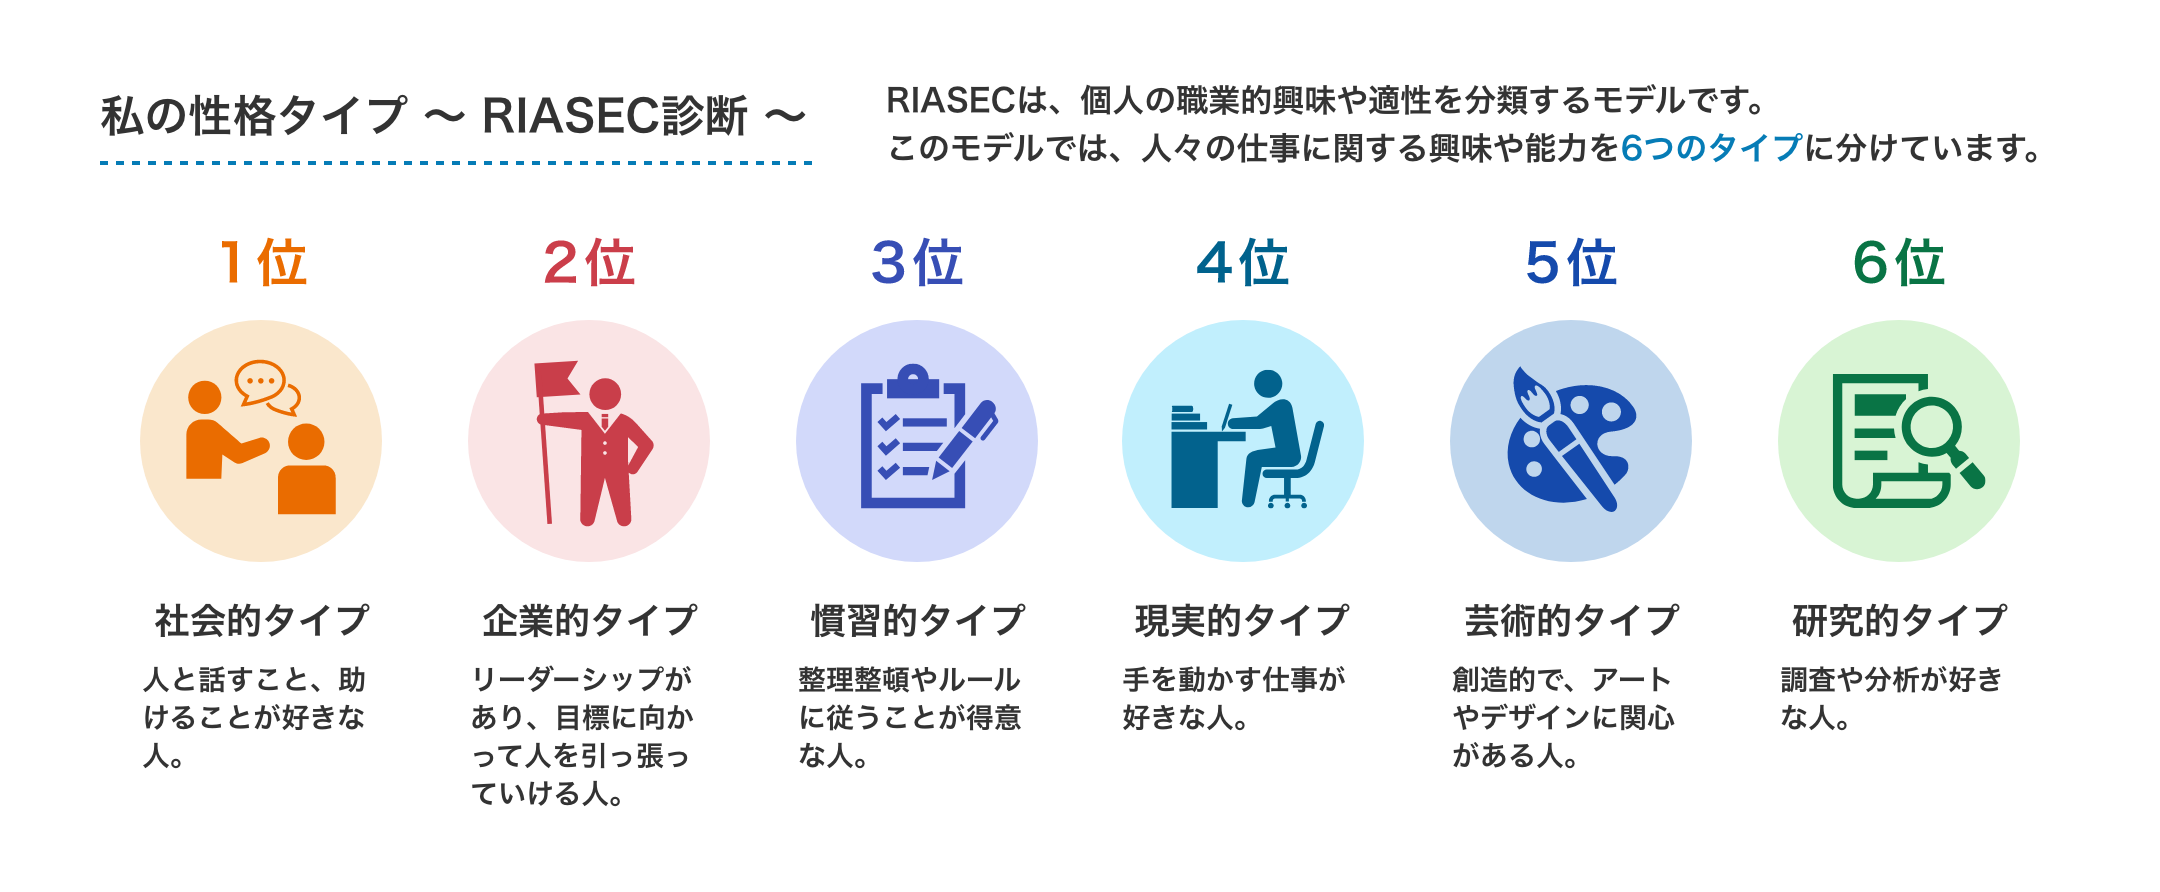 私の性格タイプ ～ RIASEC診断 ～ RIASECは、個人の職業的興味や適性を分類するモデルです。このモデルでは、人々の仕事に関する興味や能力を6つのタイプに分けています。